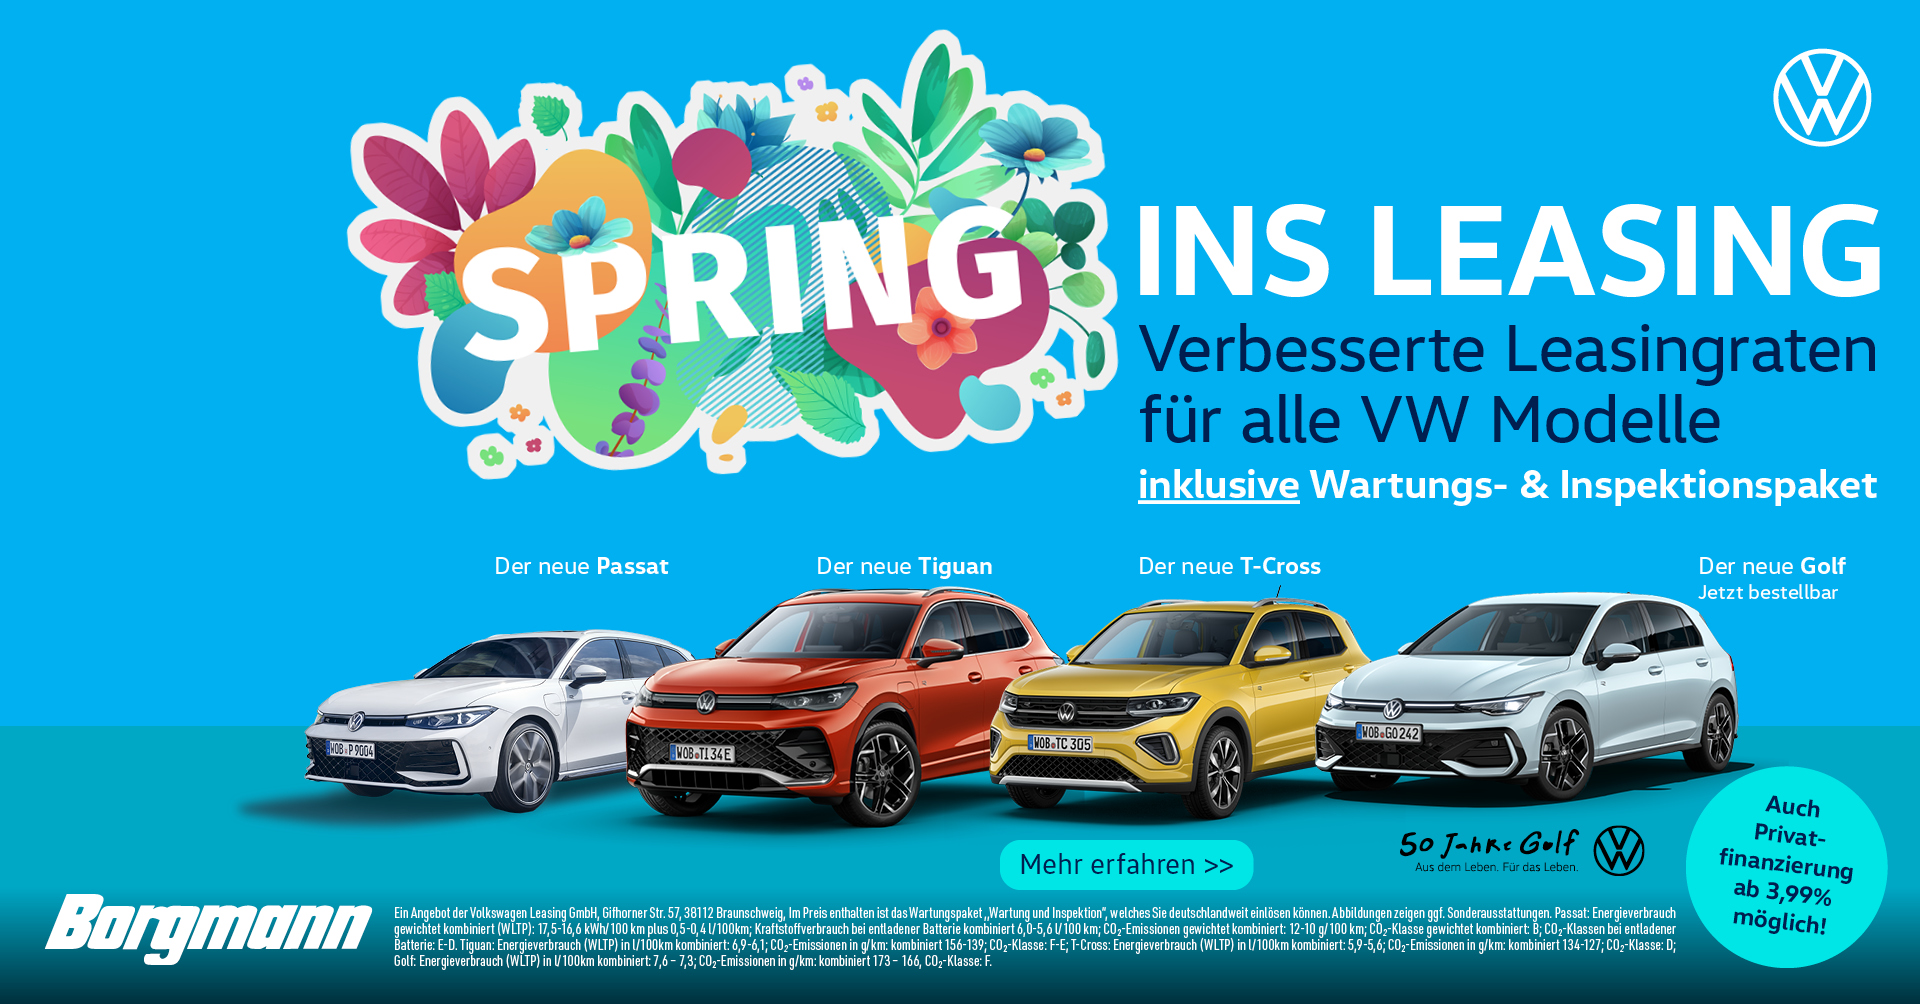 VW Spring ins Leasing, Verbesserte Leasingraten auf alle VW Modelle!